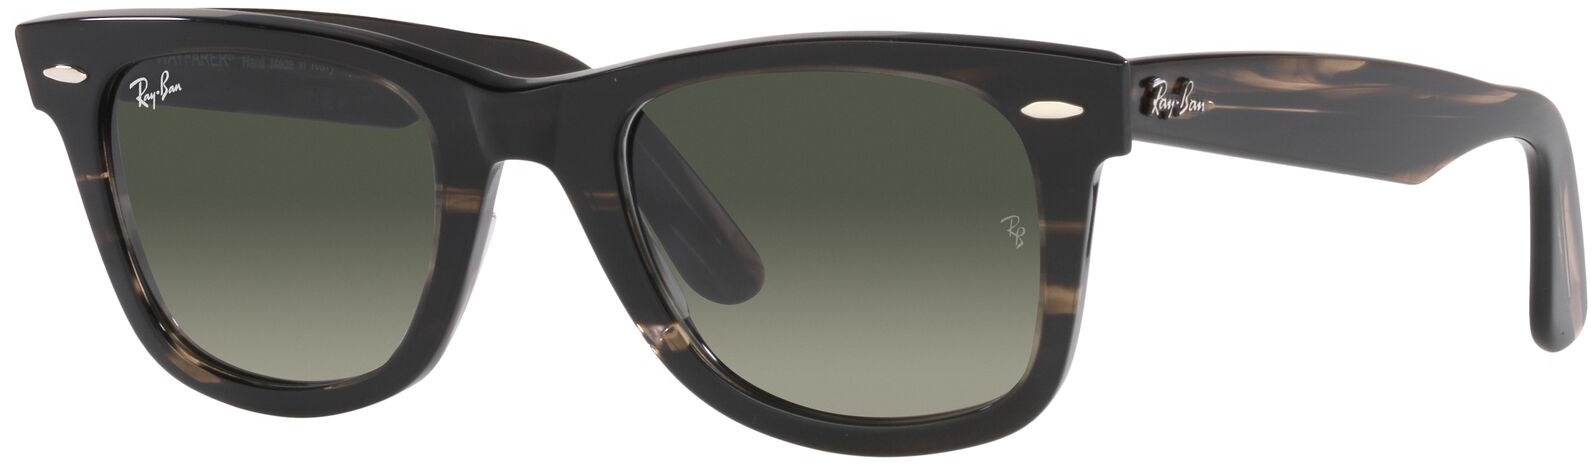 Оригинальные солнцезащитные очки Wayfarer из биоацетата Ray-Ban, серый фото